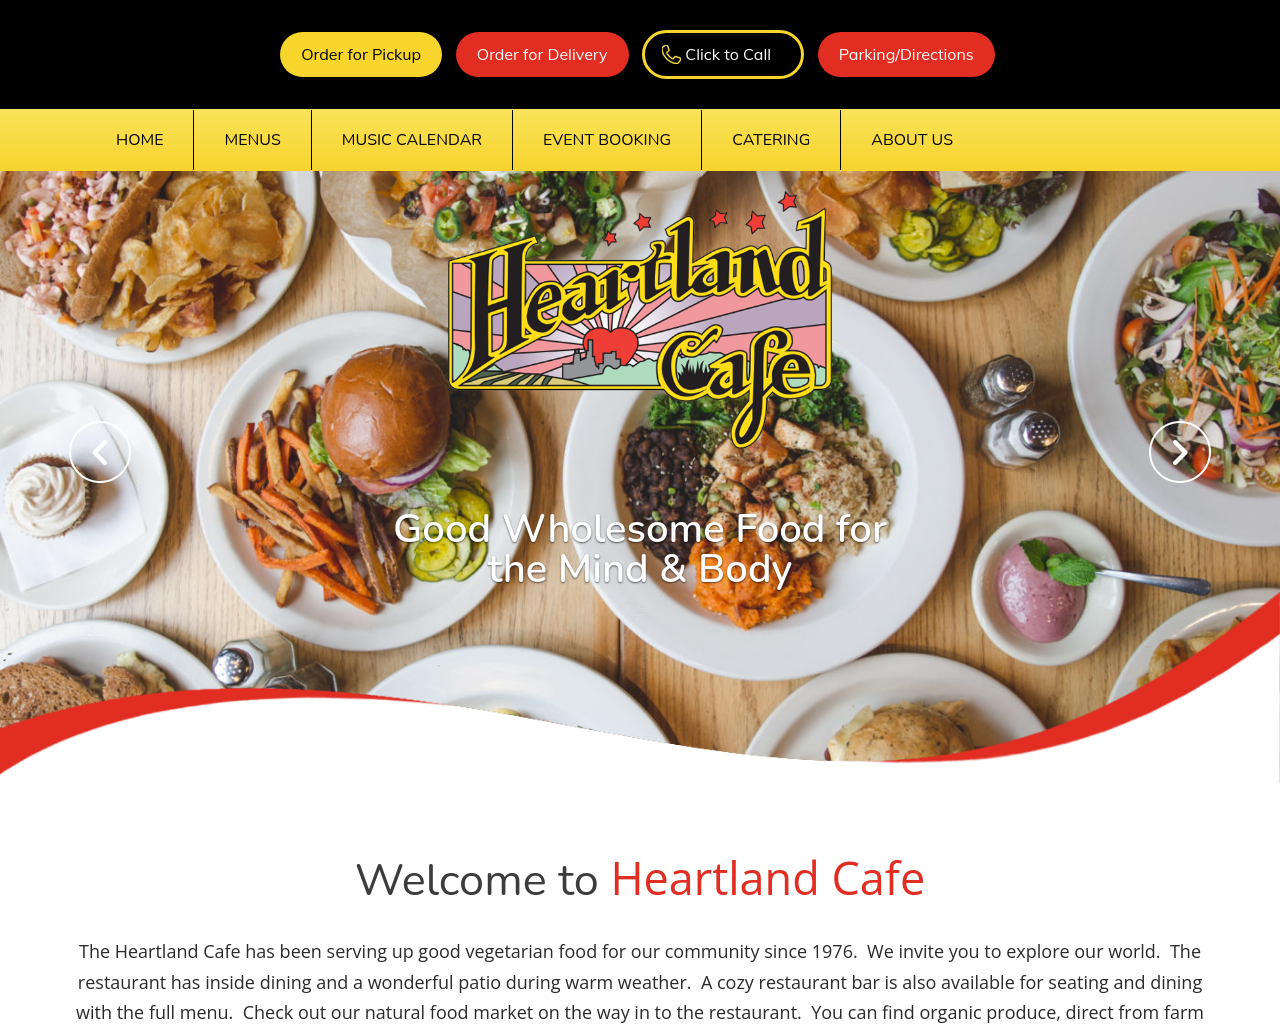 heartlandcafe.com